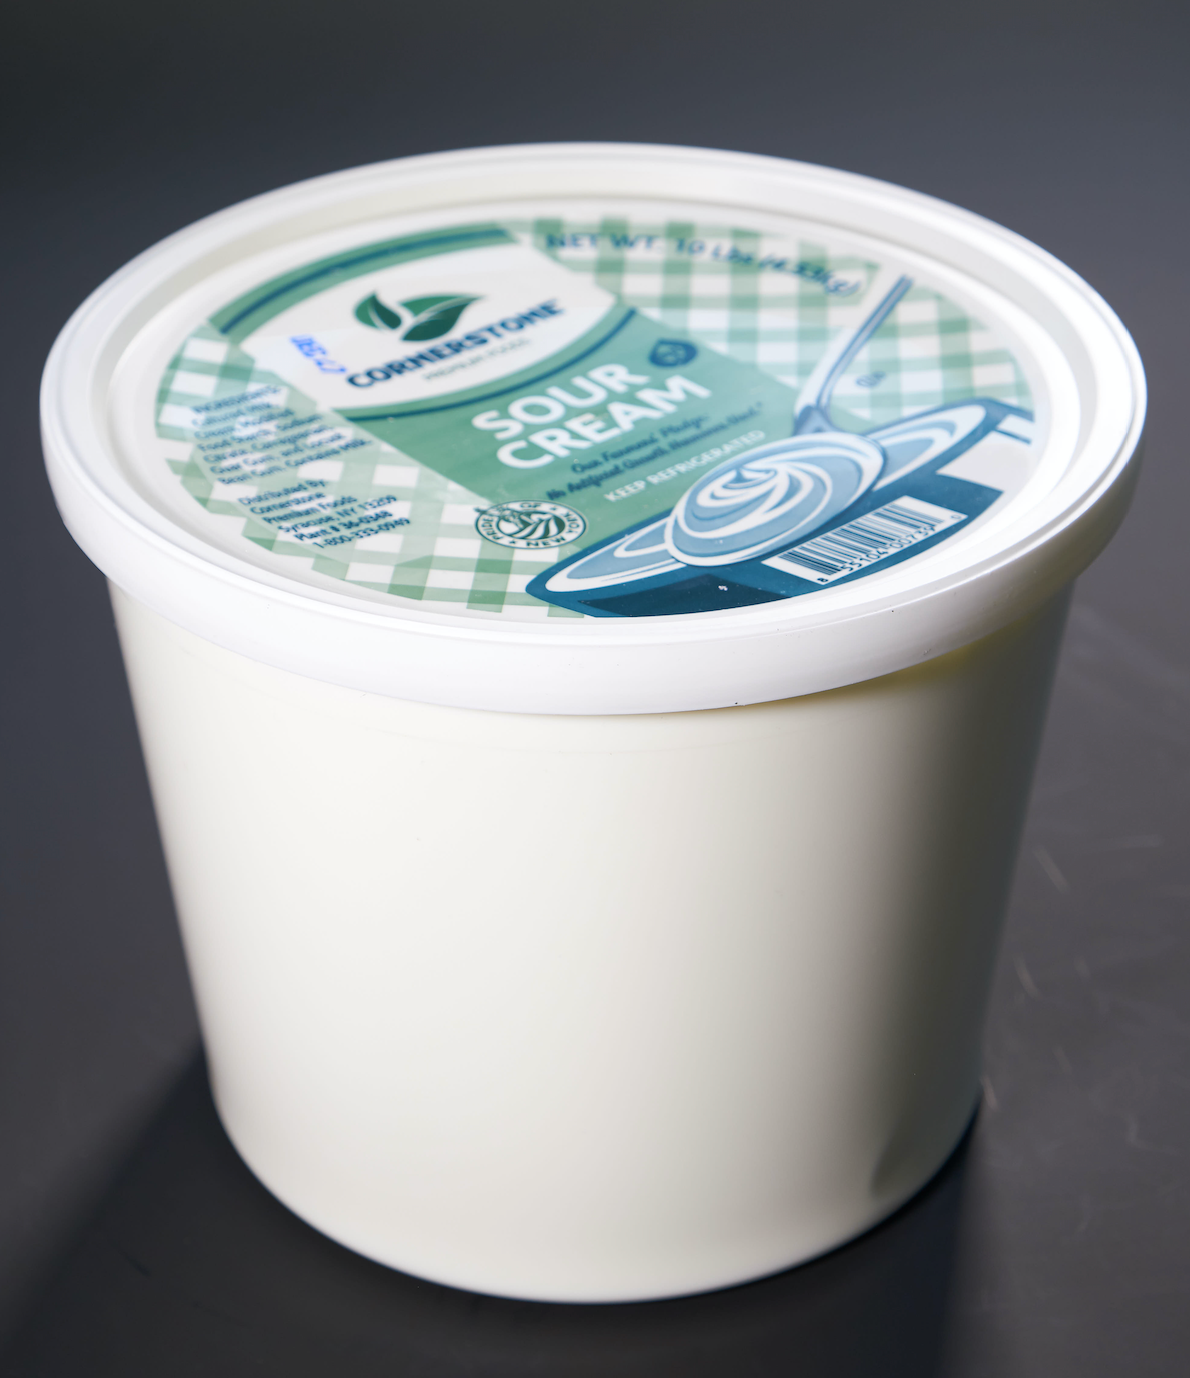 Wayfare Kosher Dairy Free Sour Cream - Shop Sour Cream at H-E-B